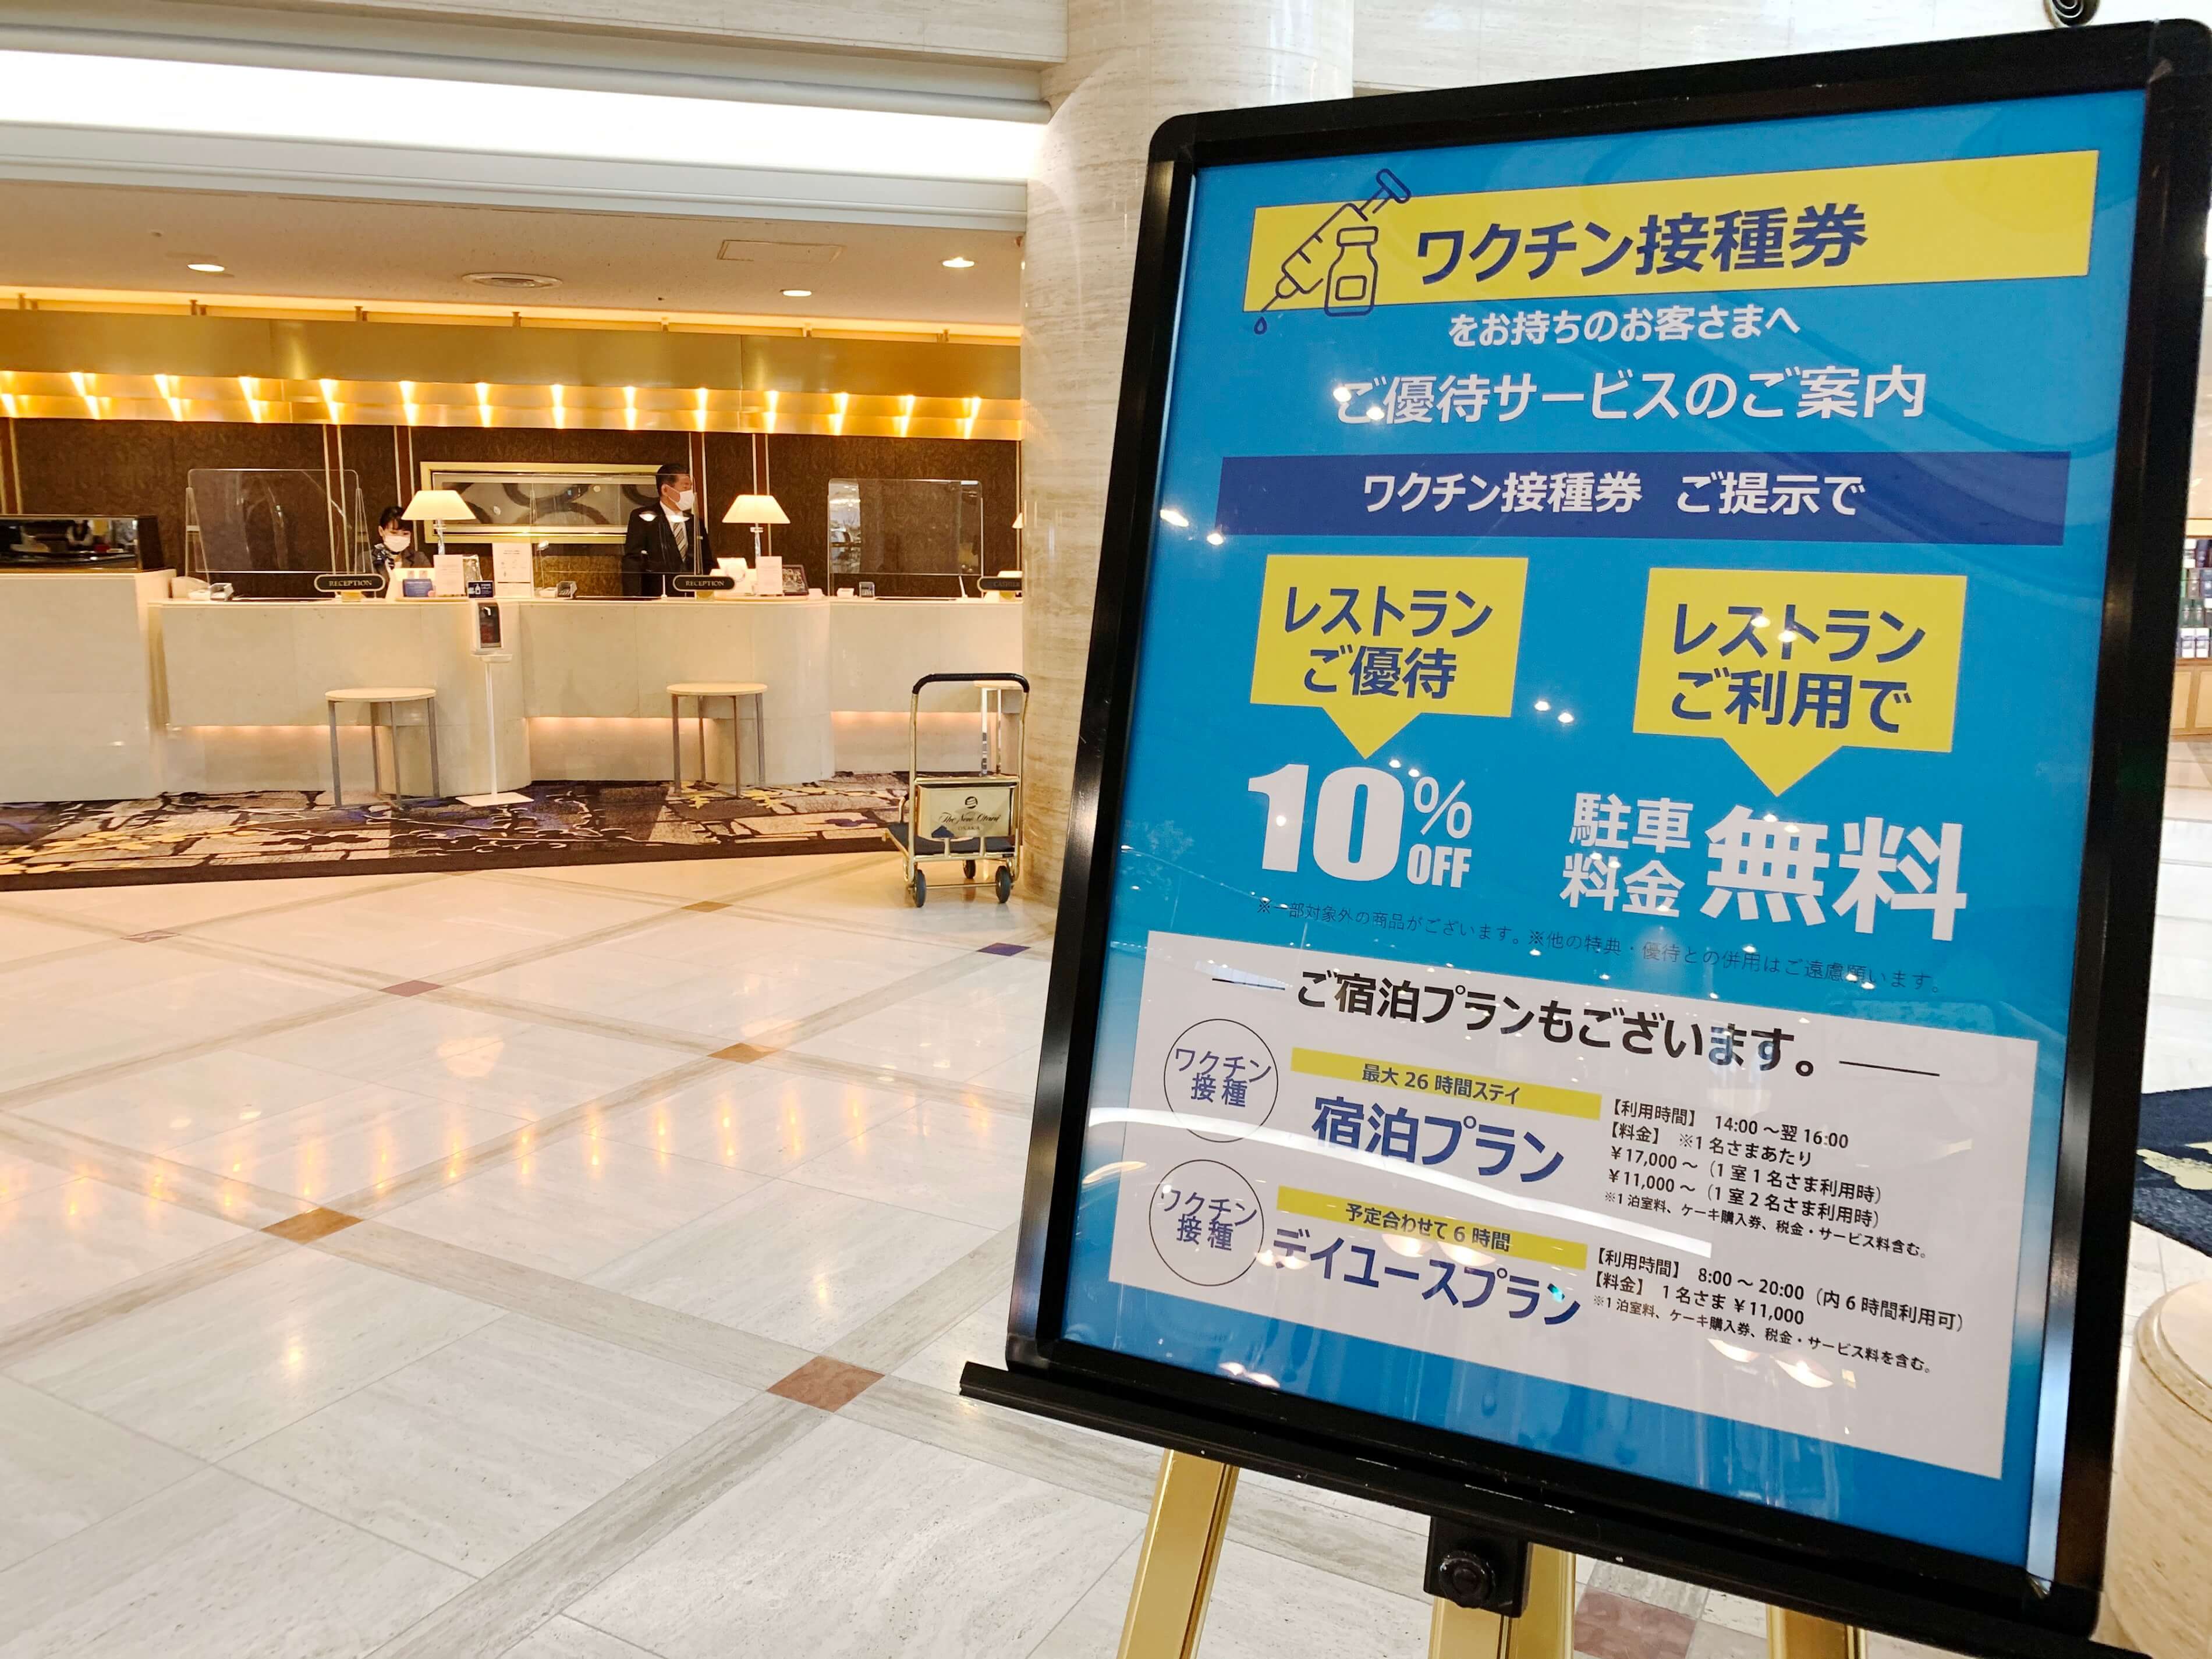 ワクチン接種会場すぐのホテルだから安心 最大26時間滞在の宿泊プラン等 接種者対象プランを各種販売 21 ホテルニューオータニ大阪